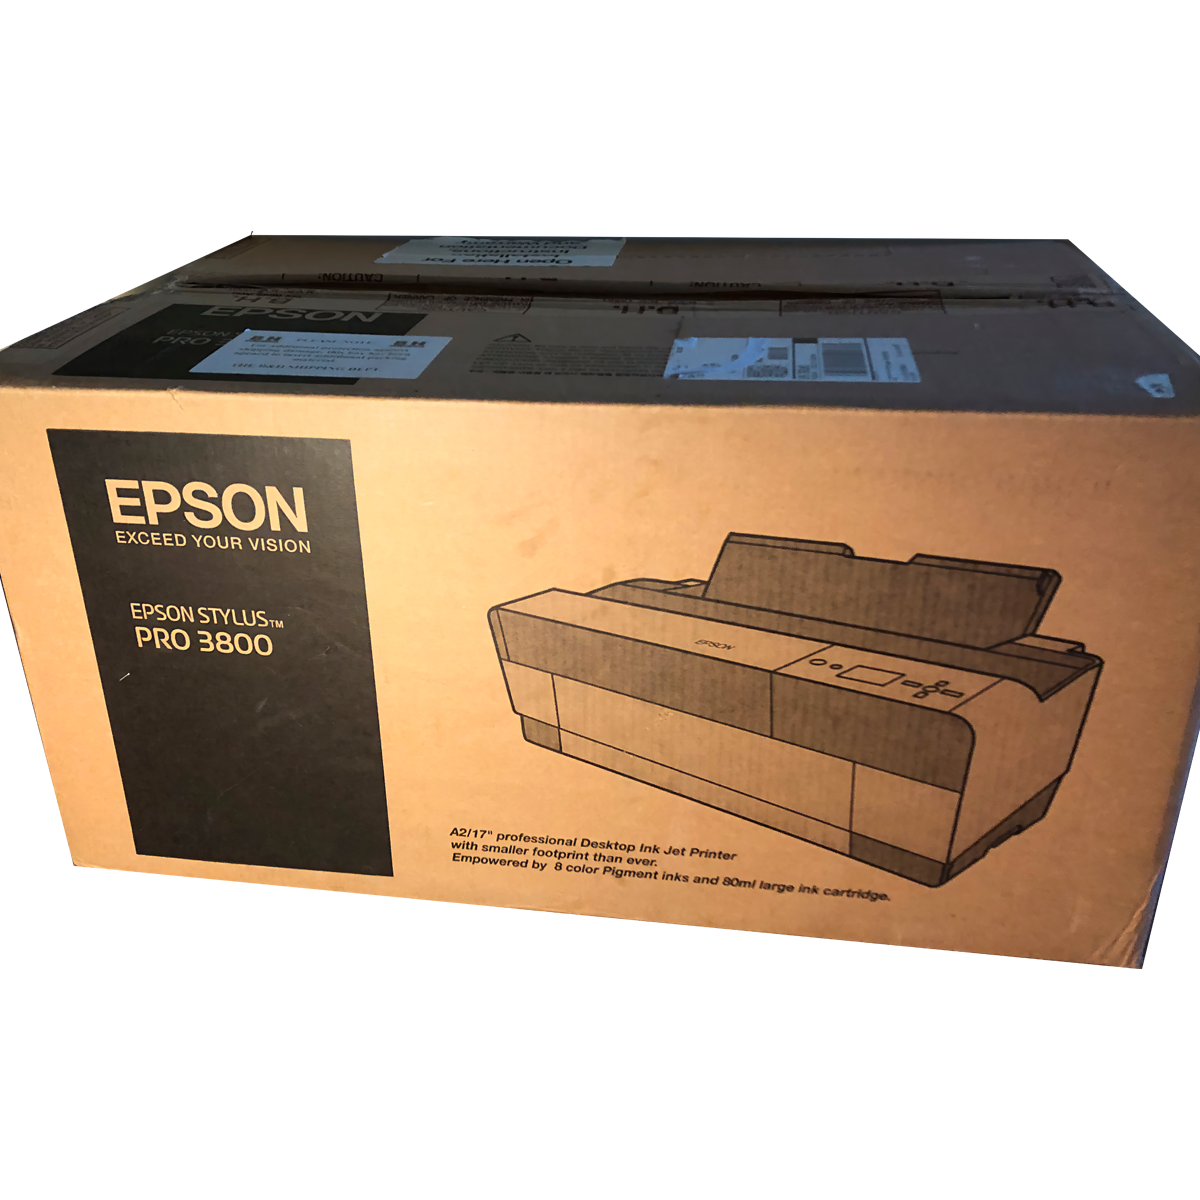 epson stylus pro 3800 printer box